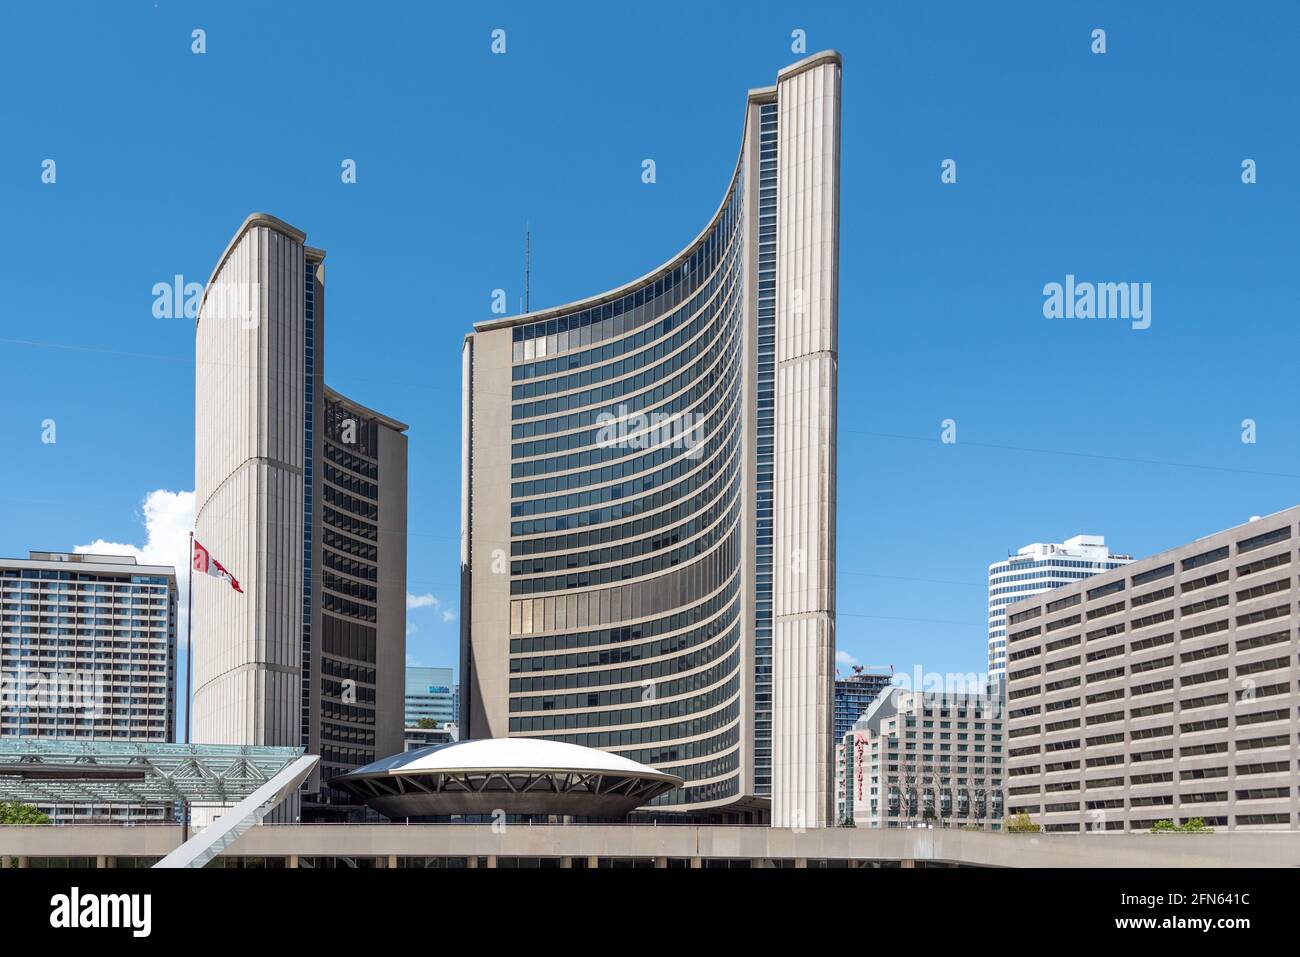 Nouvel hôtel de ville à Nathan Phillips Square, dans le quartier du centre-ville de Toronto, Canada Banque D'Images